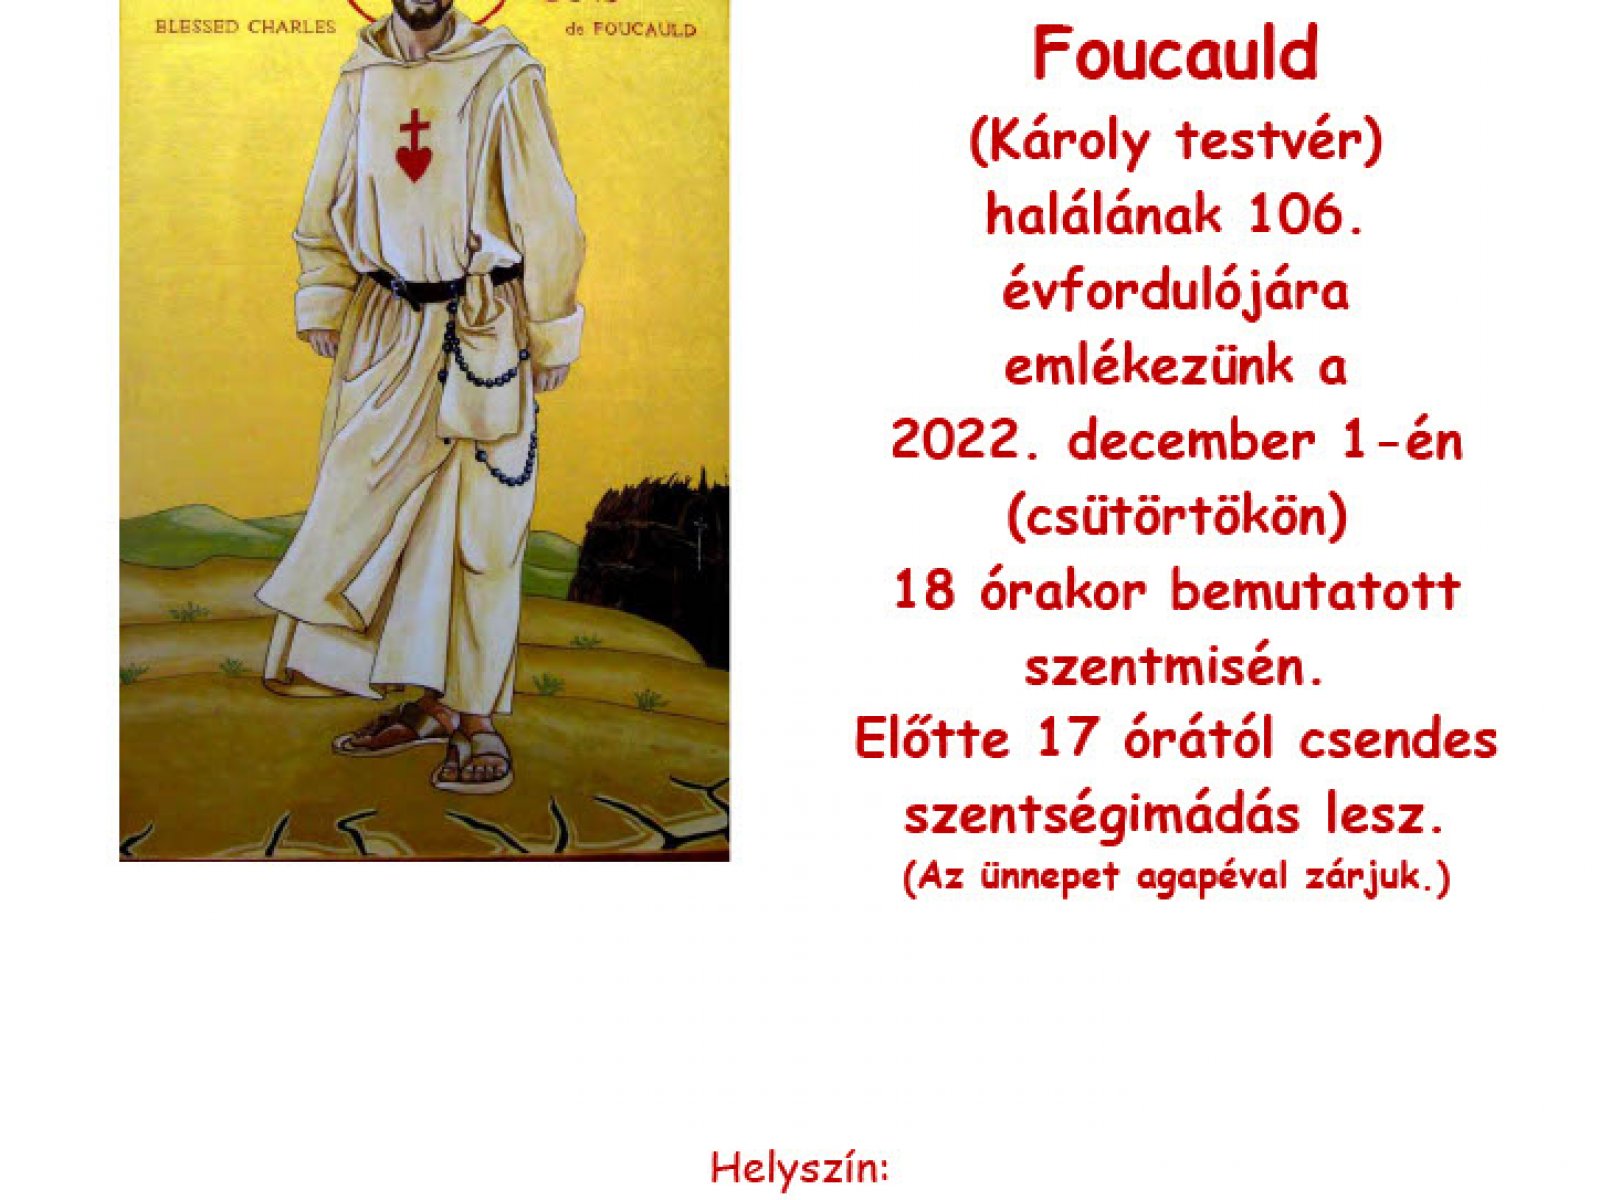 Szent Charles de Foucauld emlékezés